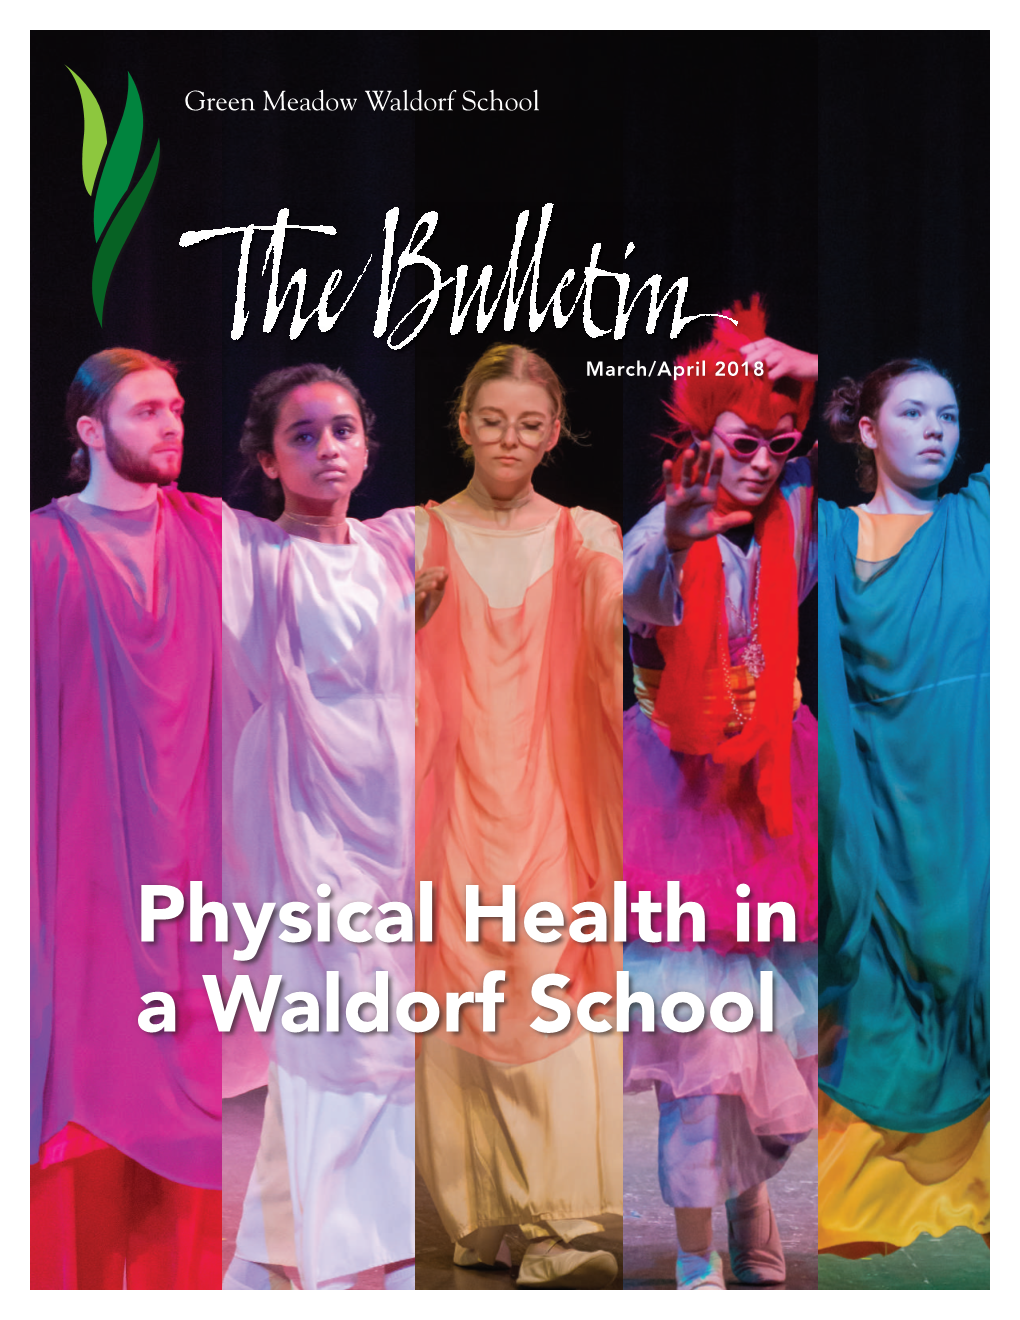 Physical Health in a Waldorf School